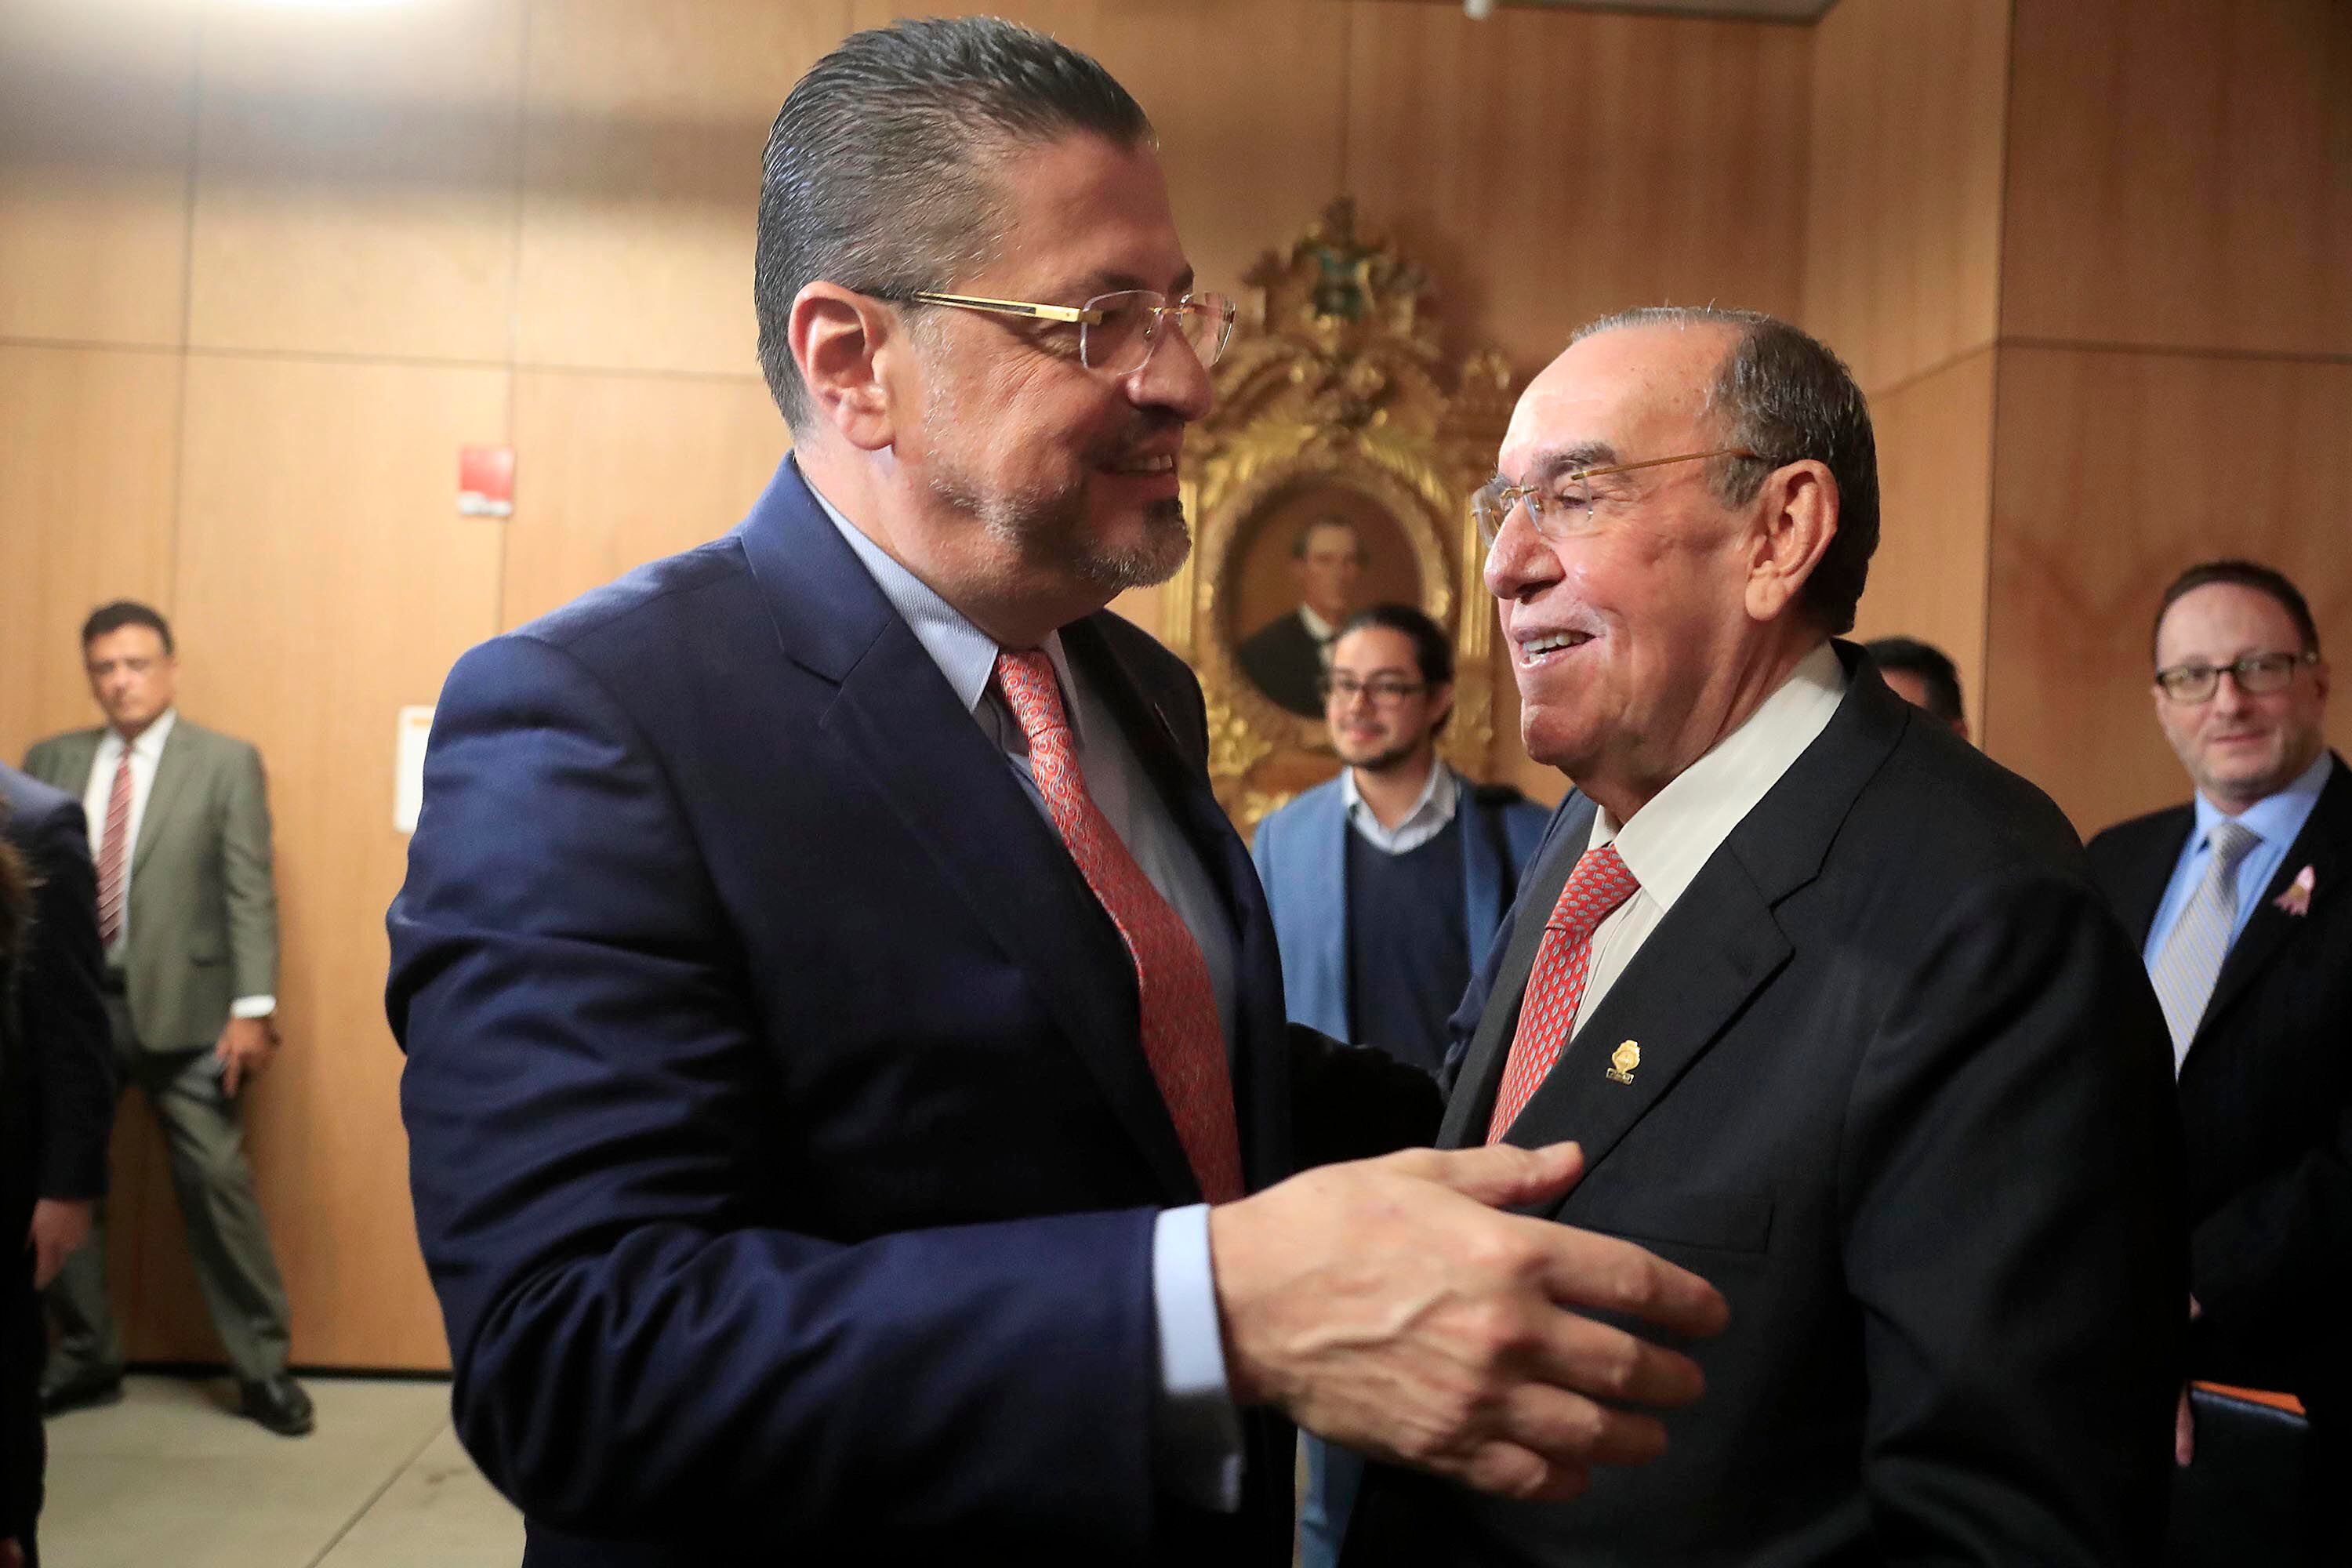 El presidente de la República, Rodrigo Chaves, y su par de la Asamblea Legislativa, Rodrigo Arias, tenían previsto una reunión para este viernes. Arias canceló el encuentro por la declaraciones de Chaves en Limón.